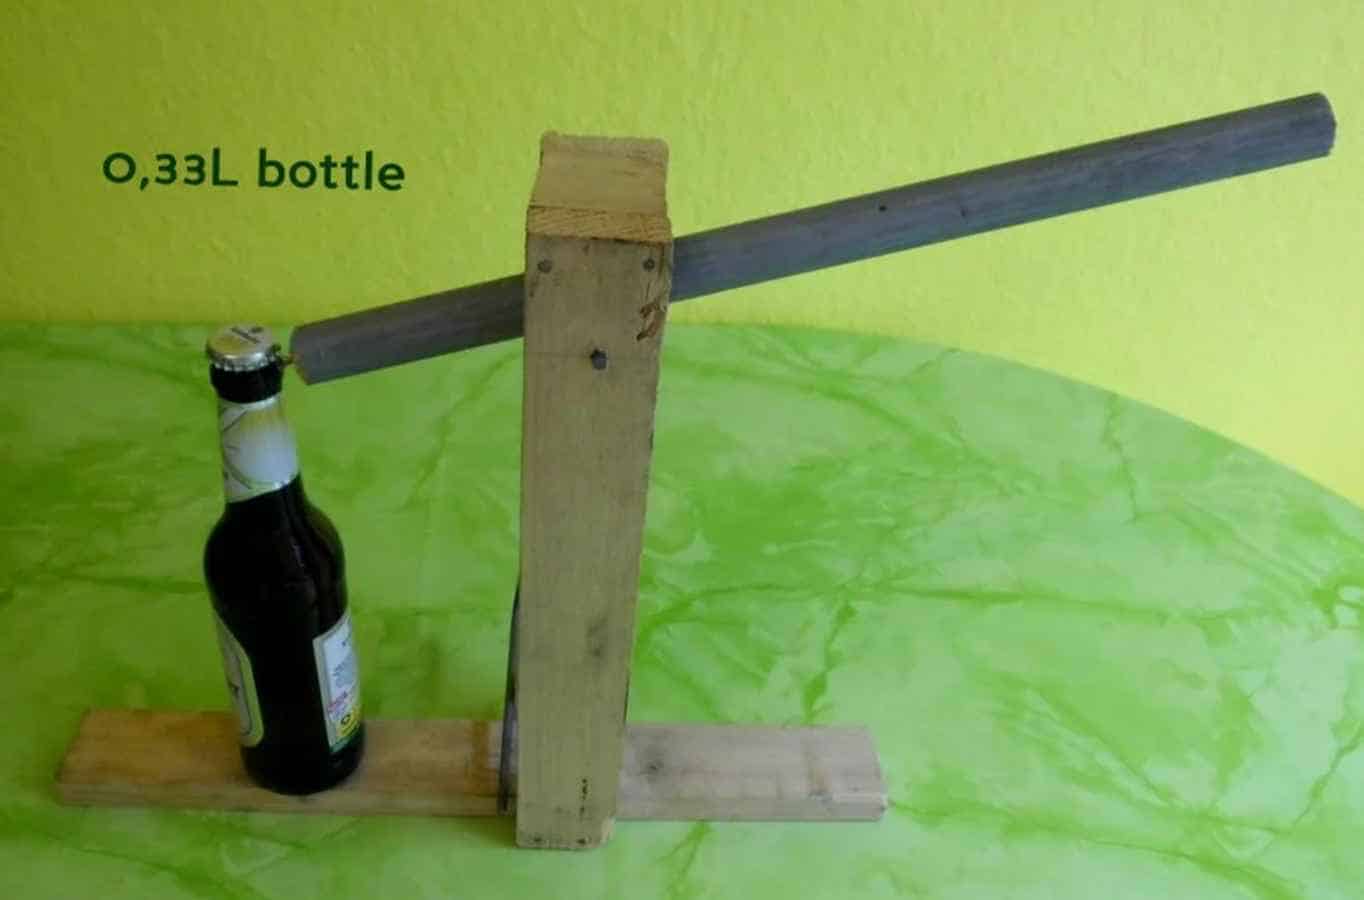  Catapult bottle opener